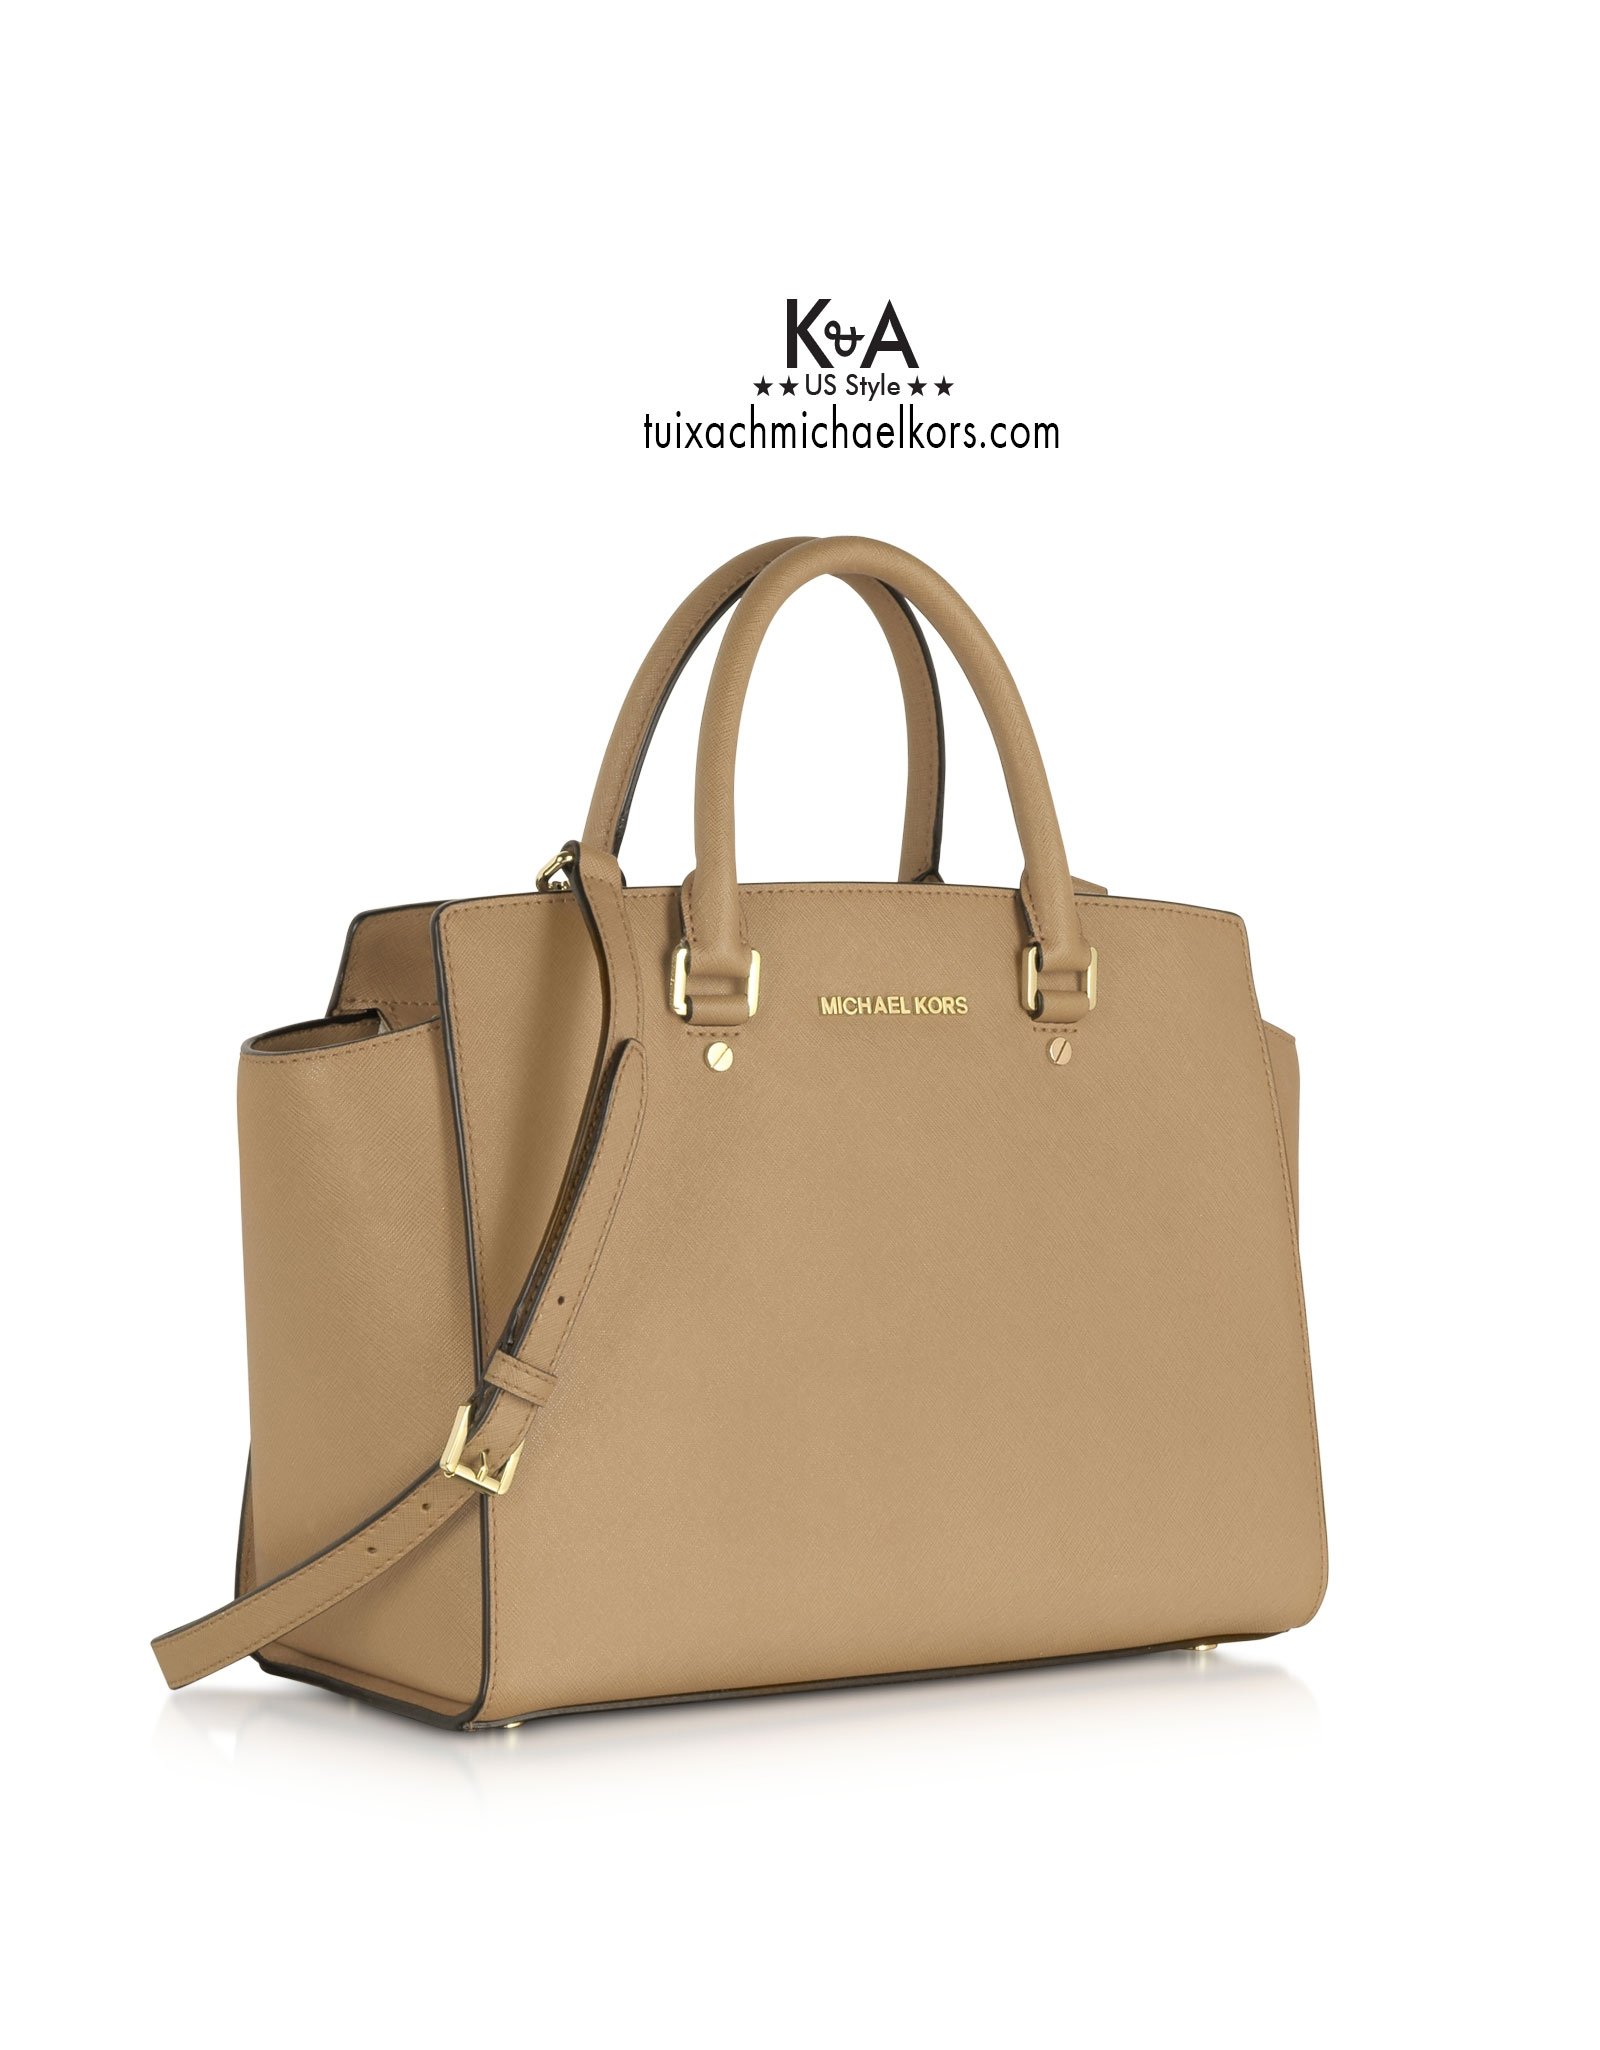 Michael Kors Selma Gold Studded Leather Satchel Handbag Navy Blue XL 428   eBay